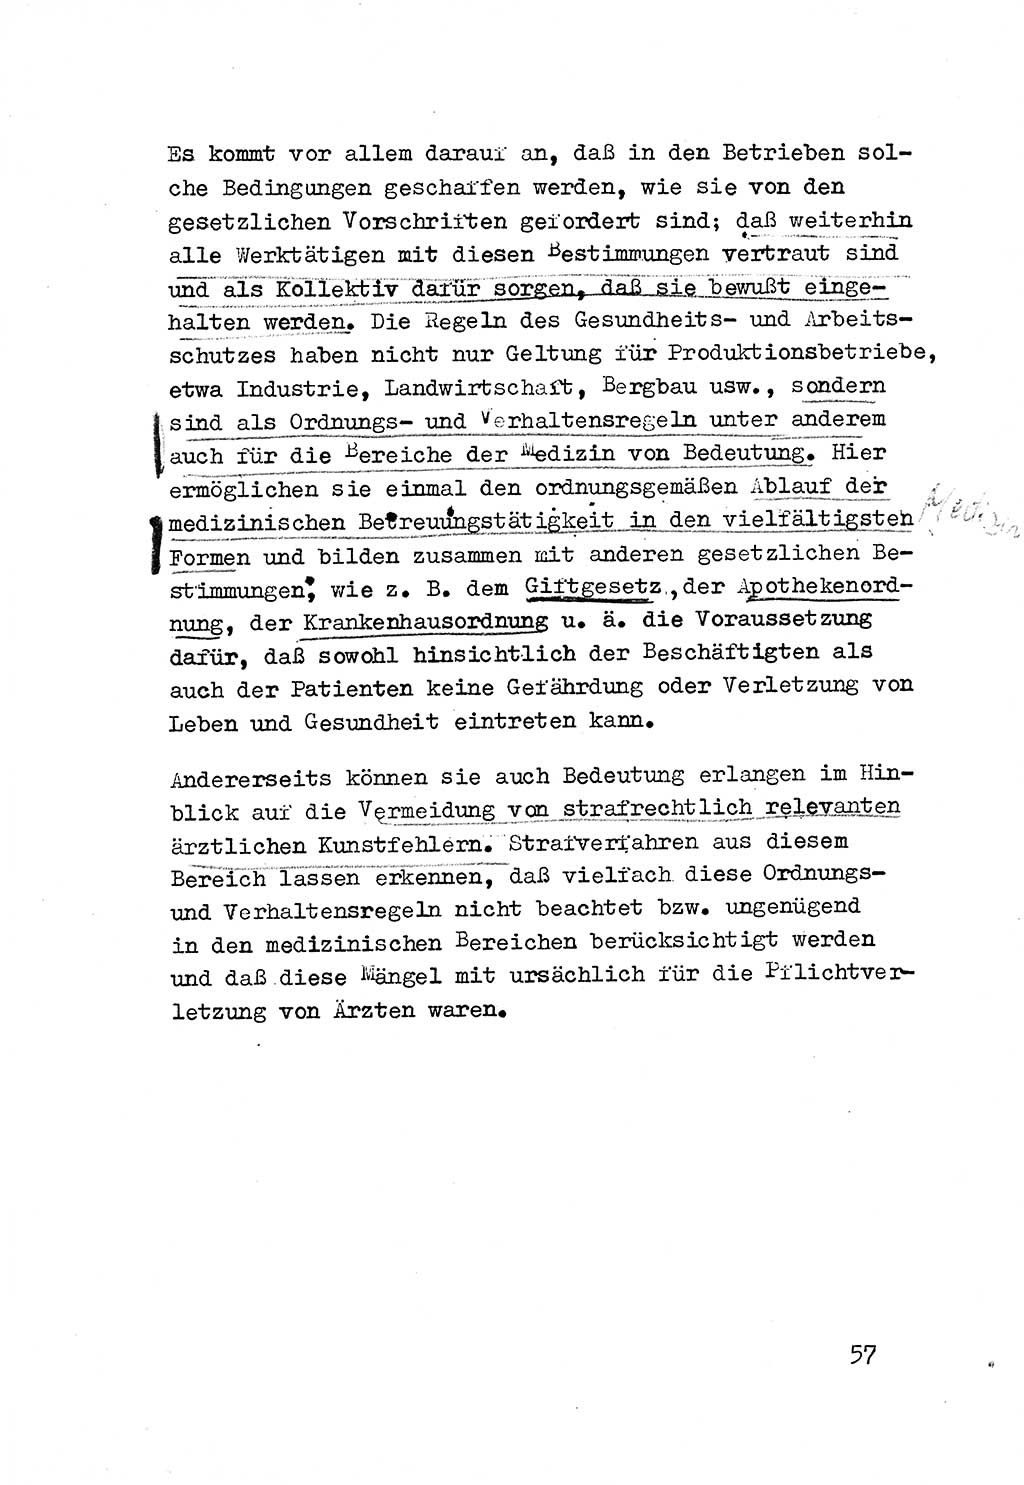 Strafrecht der DDR (Deutsche Demokratische Republik), Besonderer Teil, Lehrmaterial, Heft 3 1969, Seite 57 (Strafr. DDR BT Lehrmat. H. 3 1969, S. 57)